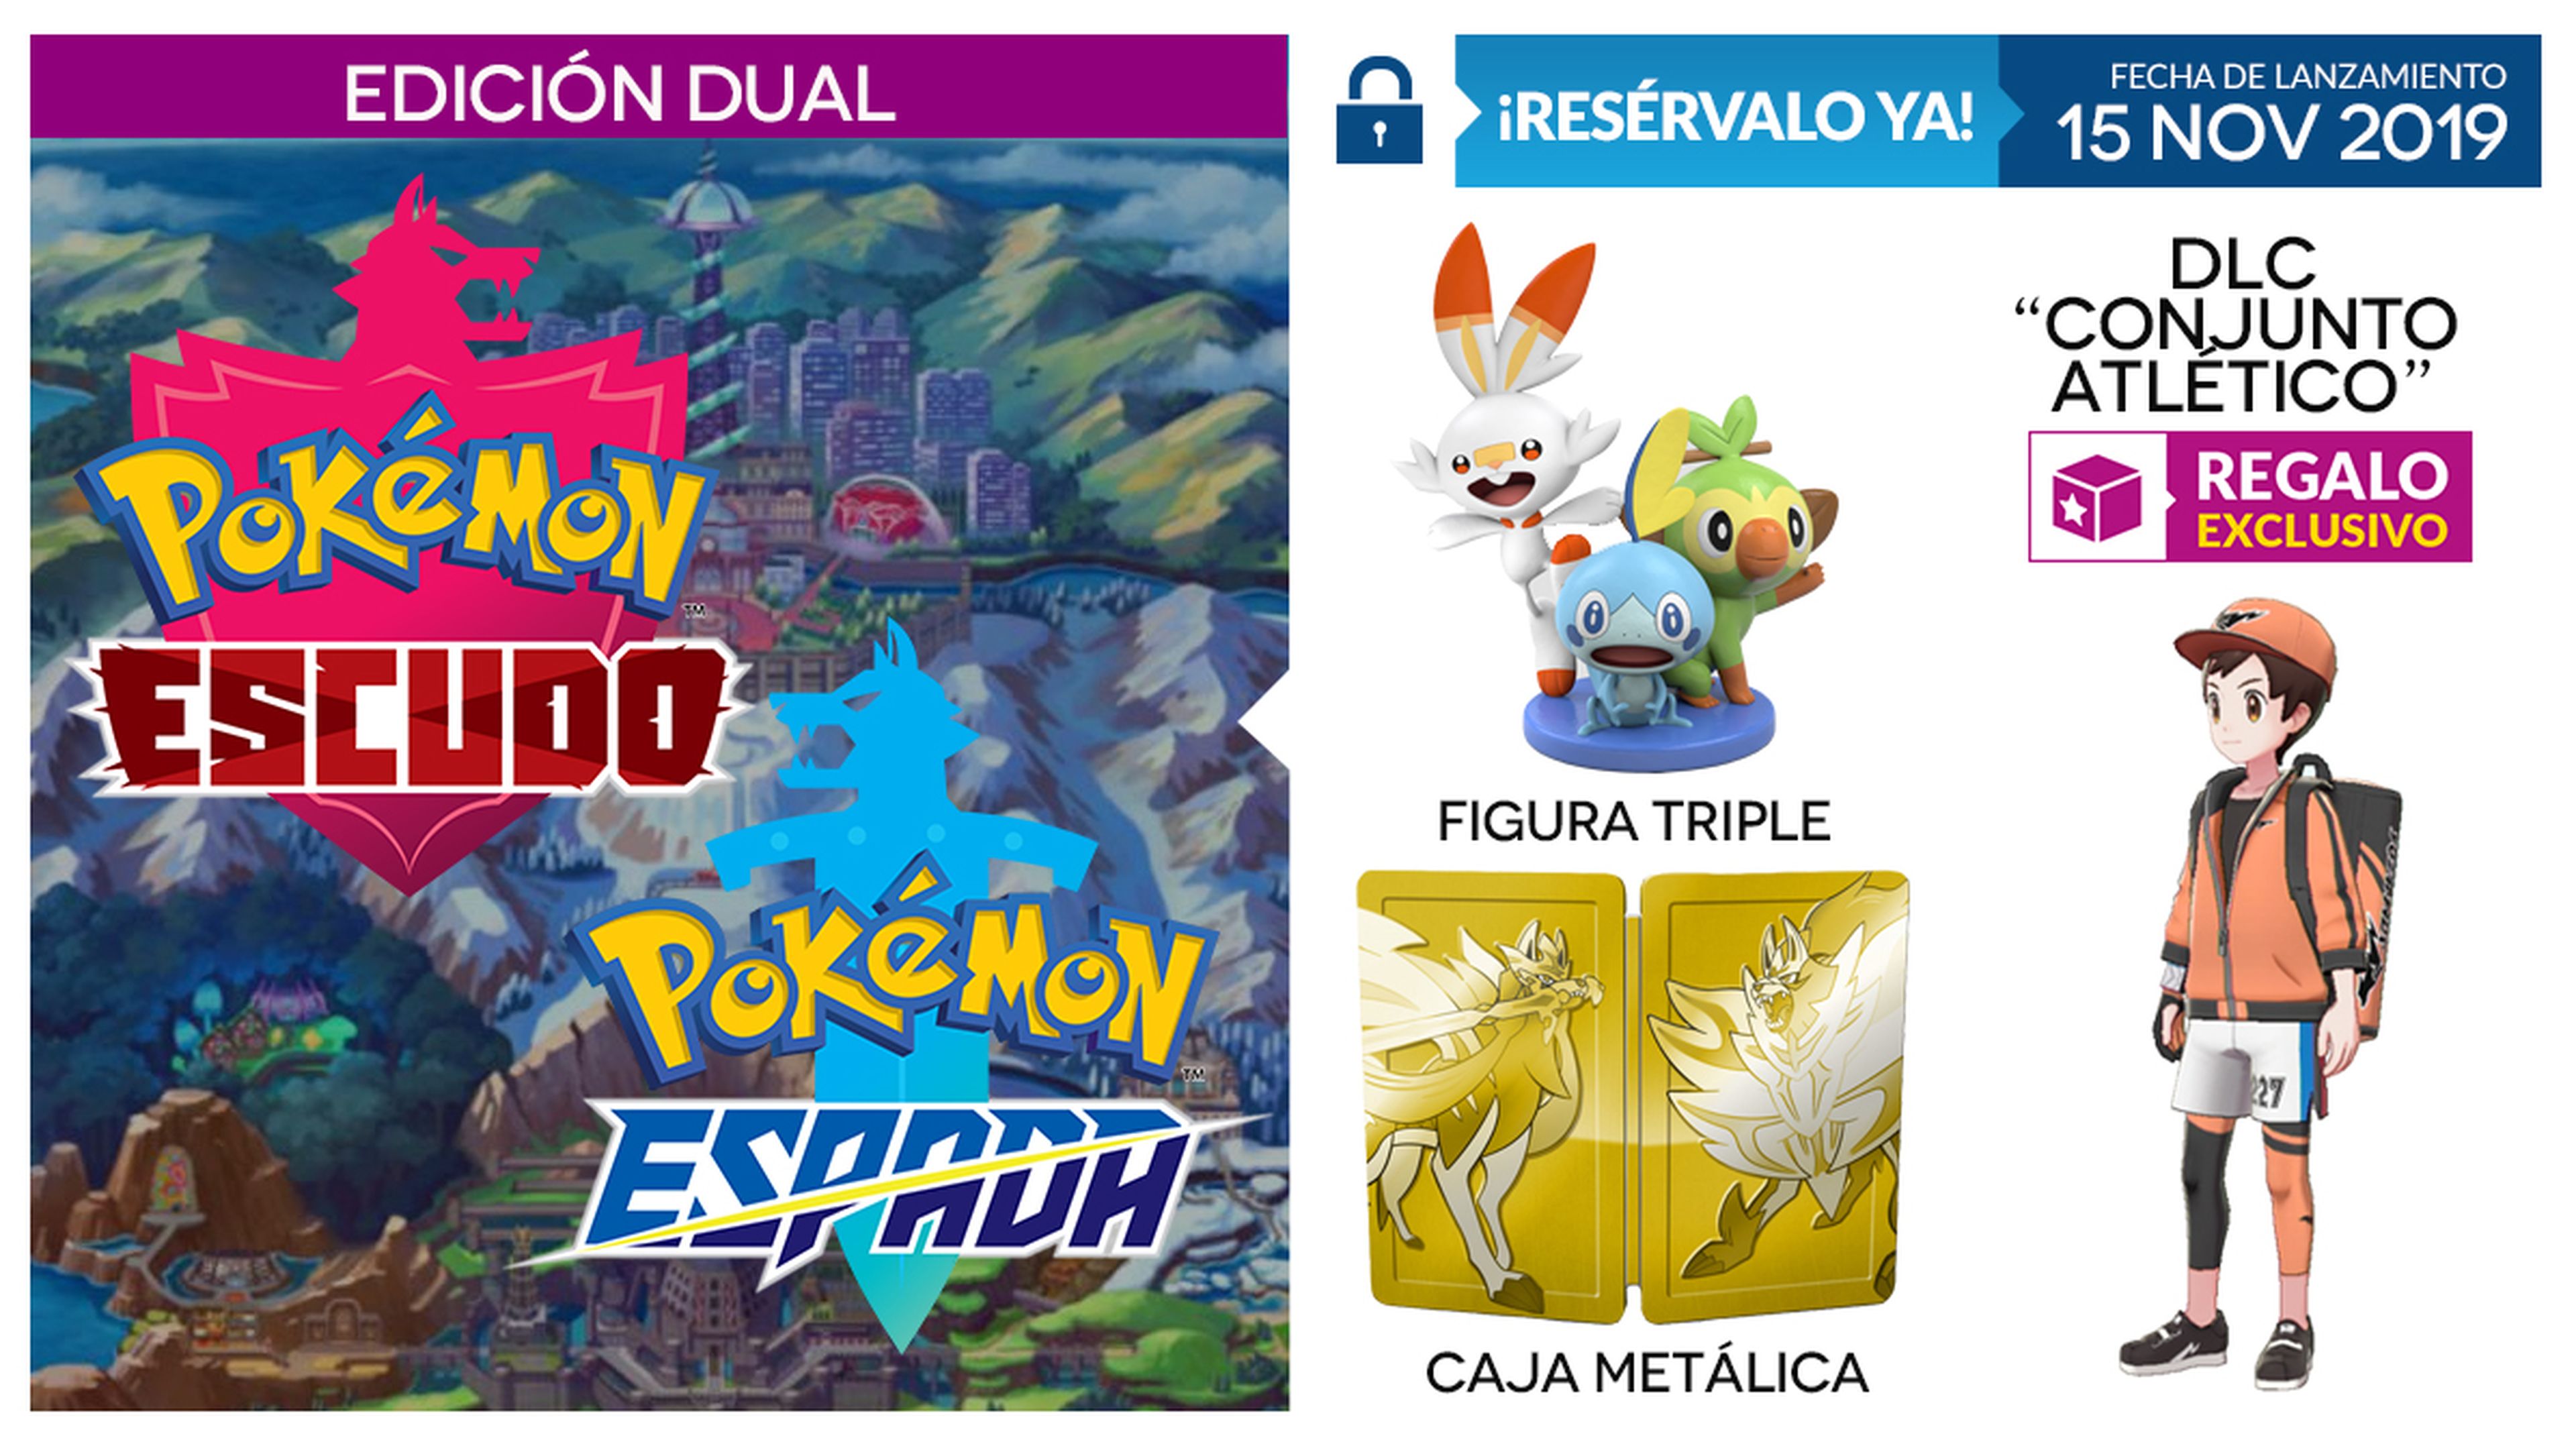 Pokémon Espada y Escudo DLC y figura GAME